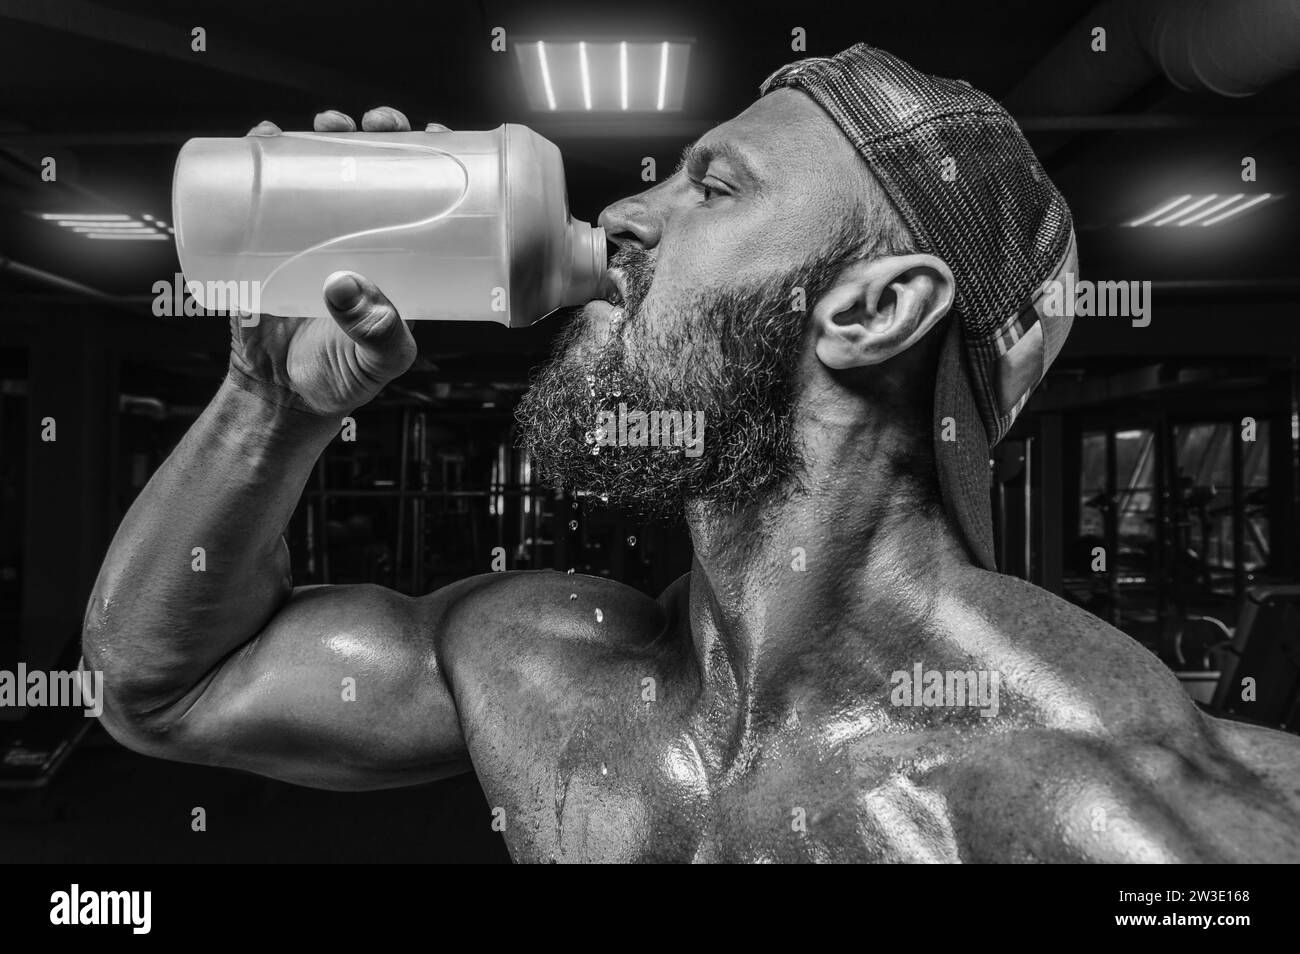 Homme musclé dans la salle de gym buvant dans un shaker. Concept de fitness et de musculation. Supports mixtes Banque D'Images